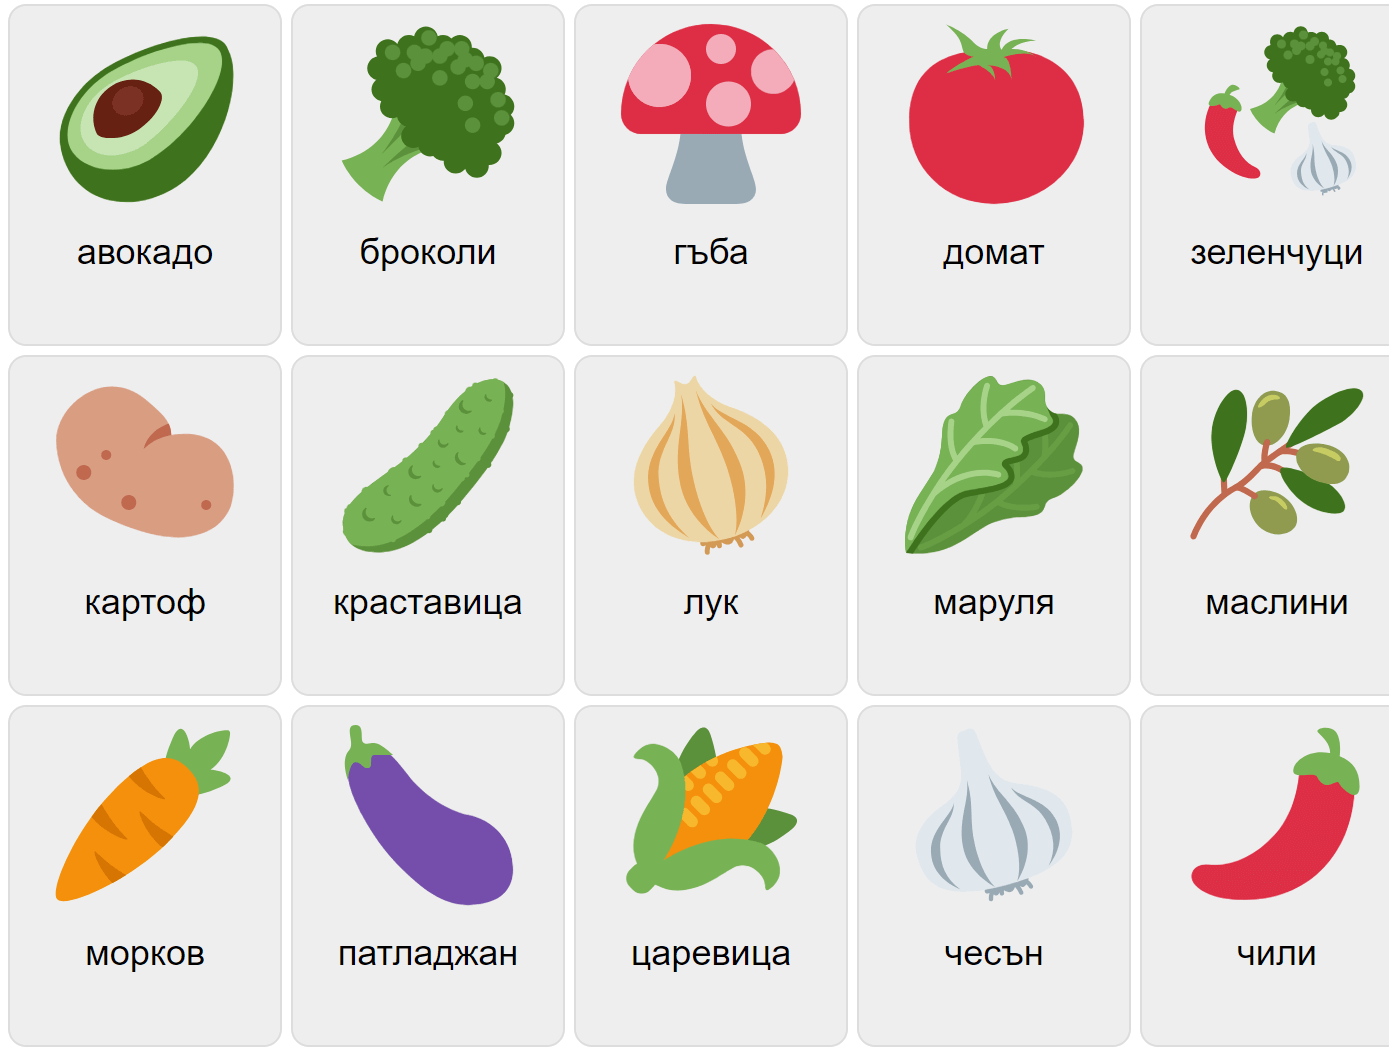 Vegetables in Bulgarian